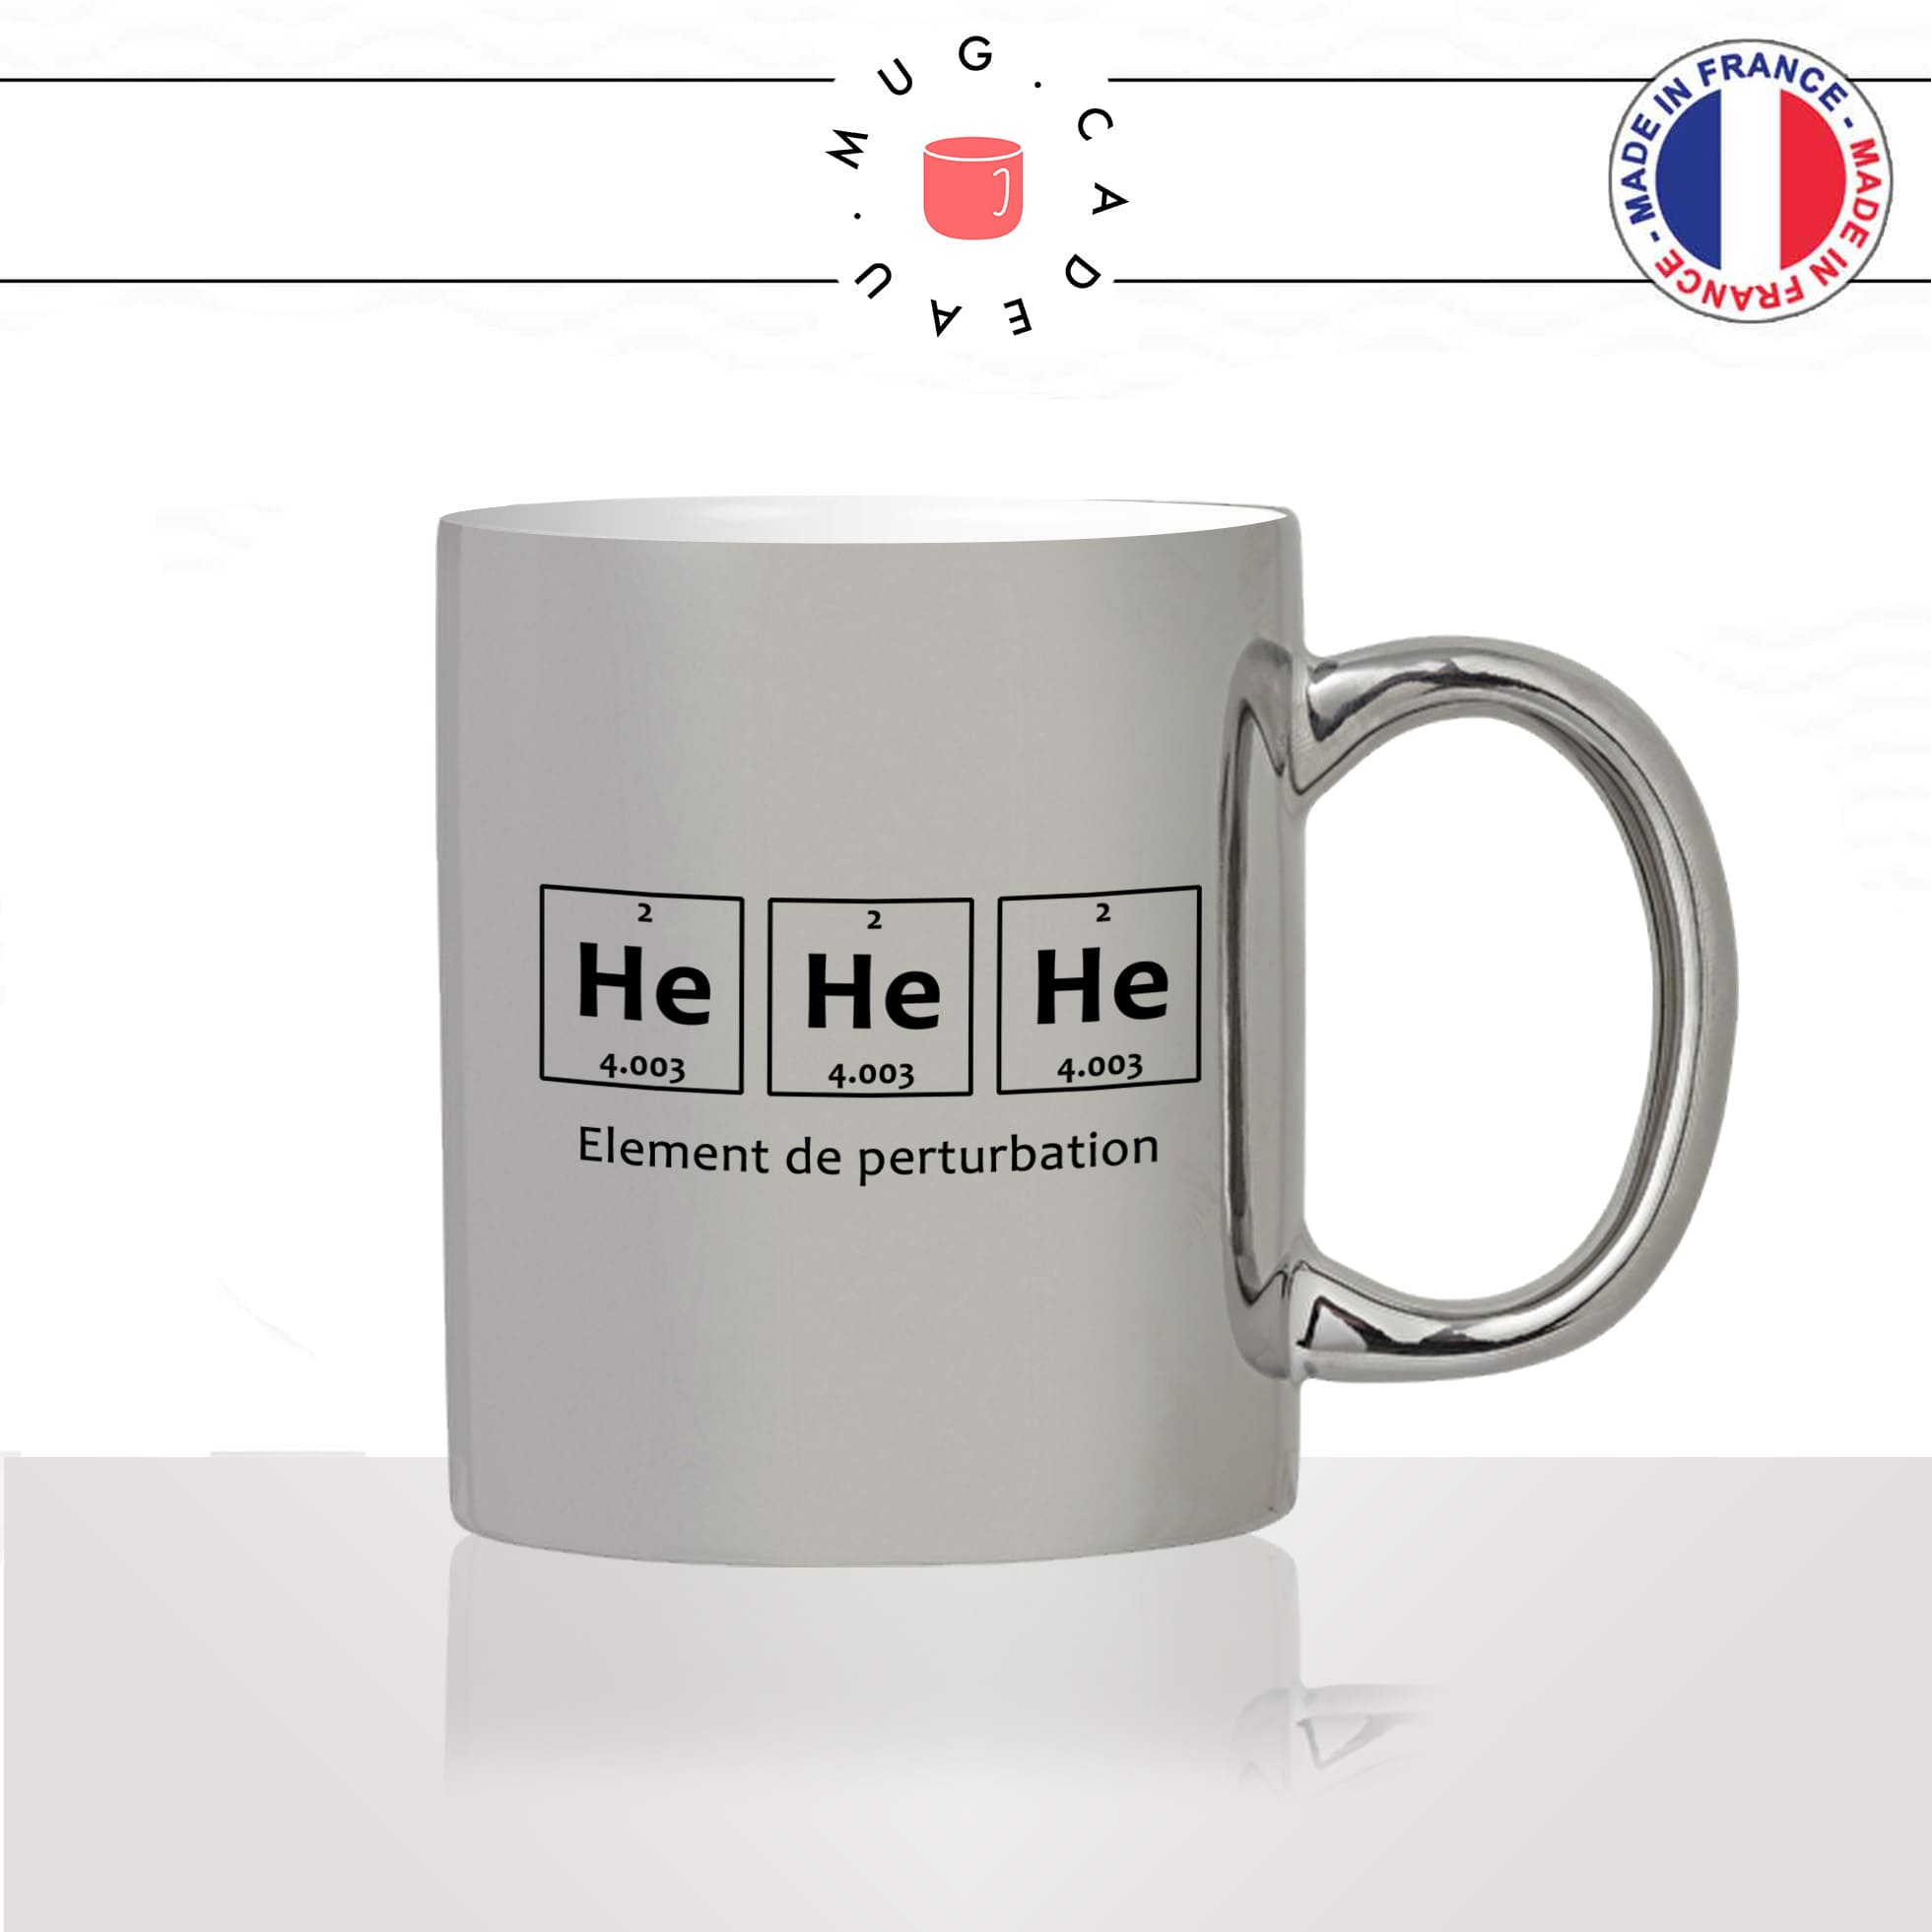 mug-tasse-argent-argenté-silver-geek-hahaha-humour-science-element-periodique-collegue-metier-original-idée-cadeau-fun-cool-café-thé2